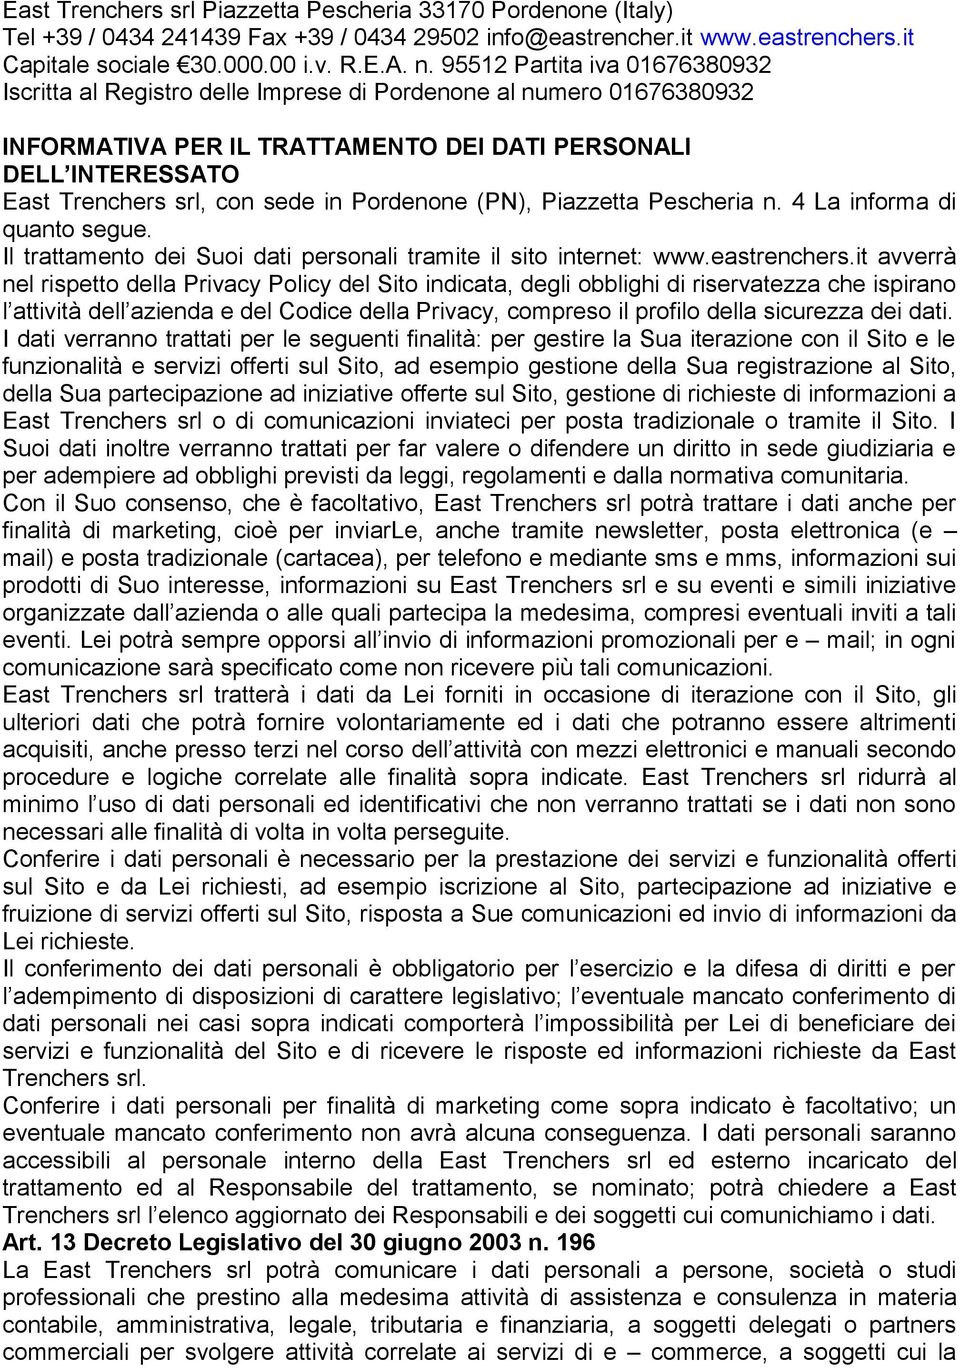 Pordenone (PN), Piazzetta Pescheria n. 4 La informa di quanto segue. Il trattamento dei Suoi dati personali tramite il sito internet: www.eastrenchers.